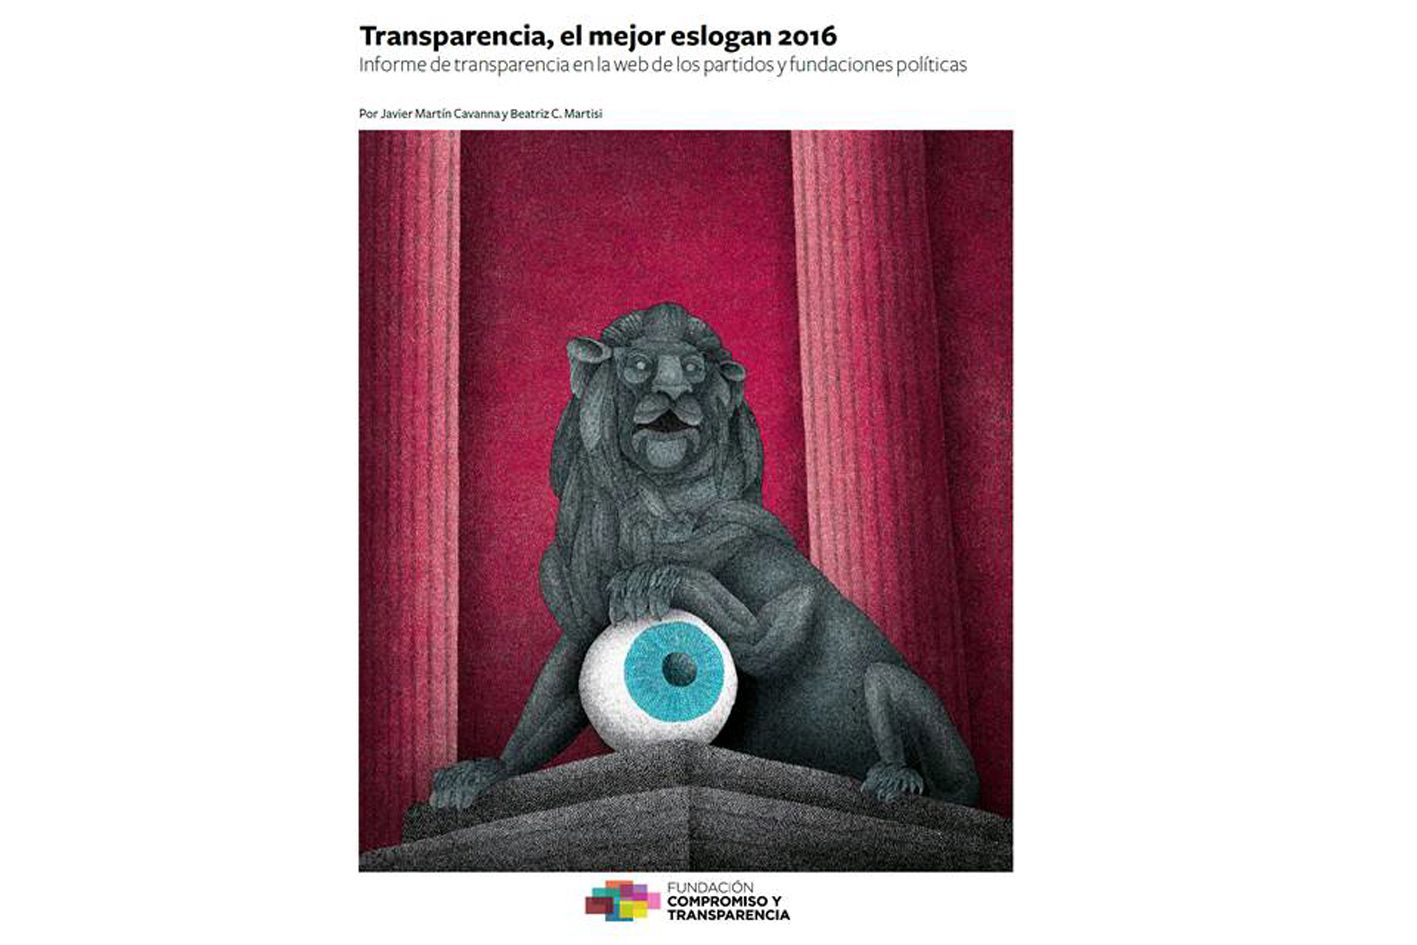 Informe-transparencia-partidos-politicos-fundaciones-2016